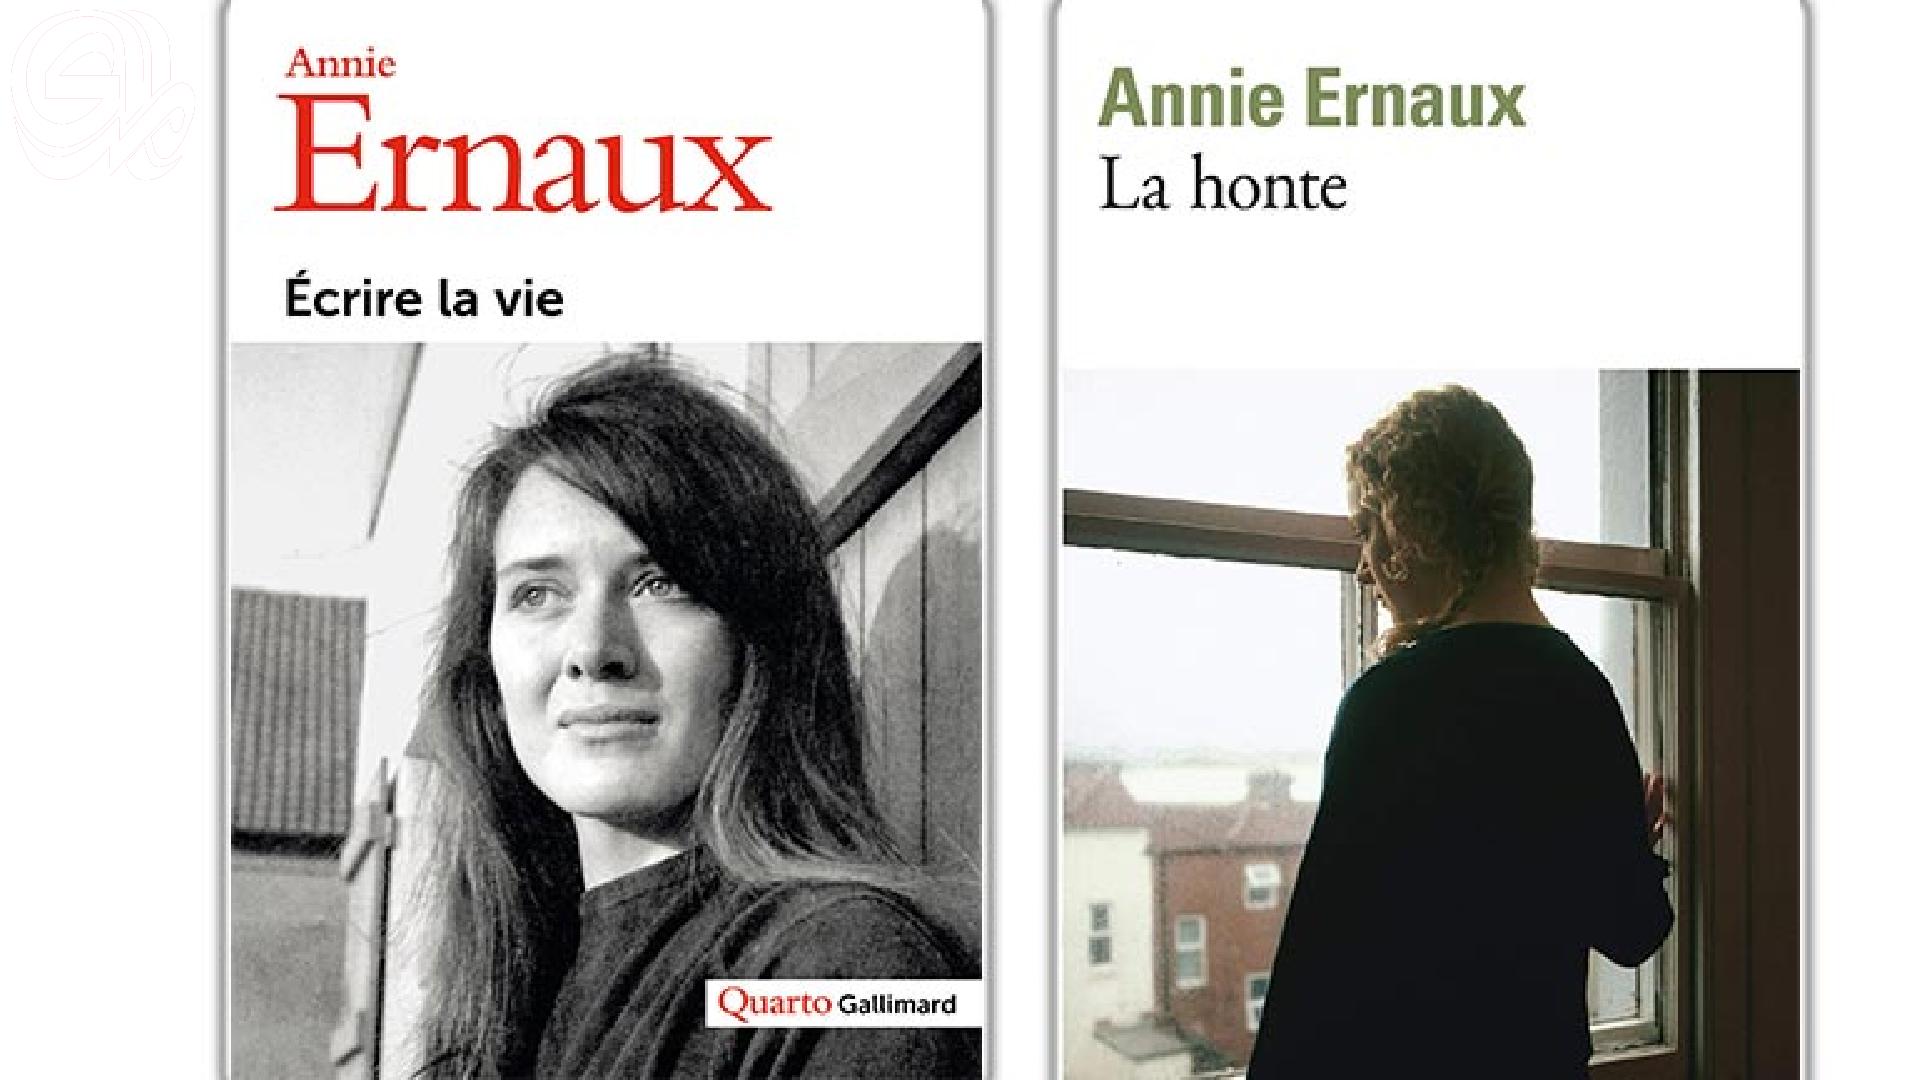 (آني إرنو) أول كاتبة فرنسية تفوز بجائزة نوبل للأدب: الجائزة هي إستمرار لإلتزامي بالكتابة..  والأدب ليس محايدا،ولم يكن يوما كذلك